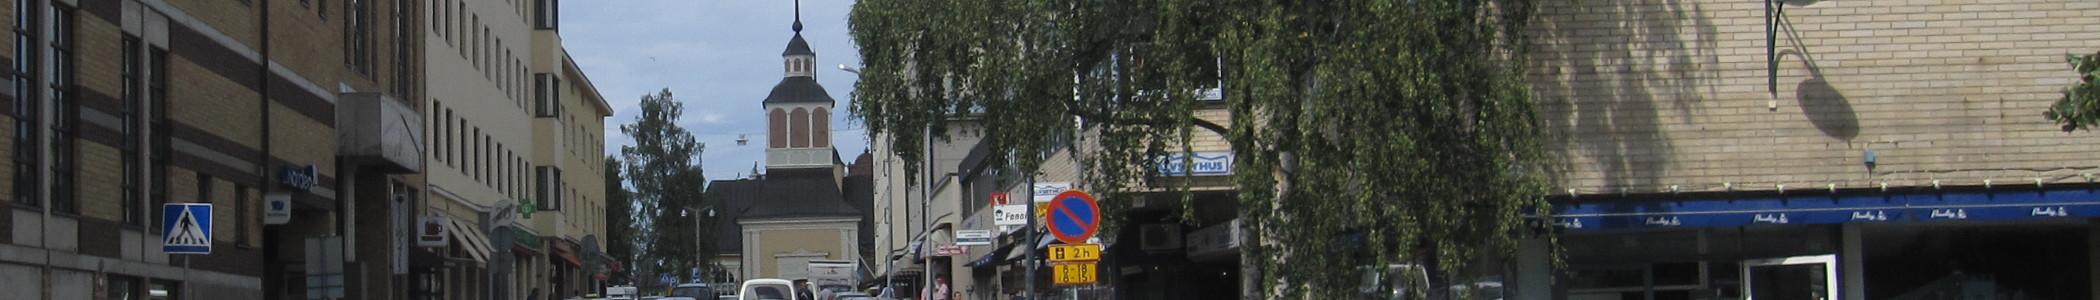 Banner image for Jakobstad on GigsGuide